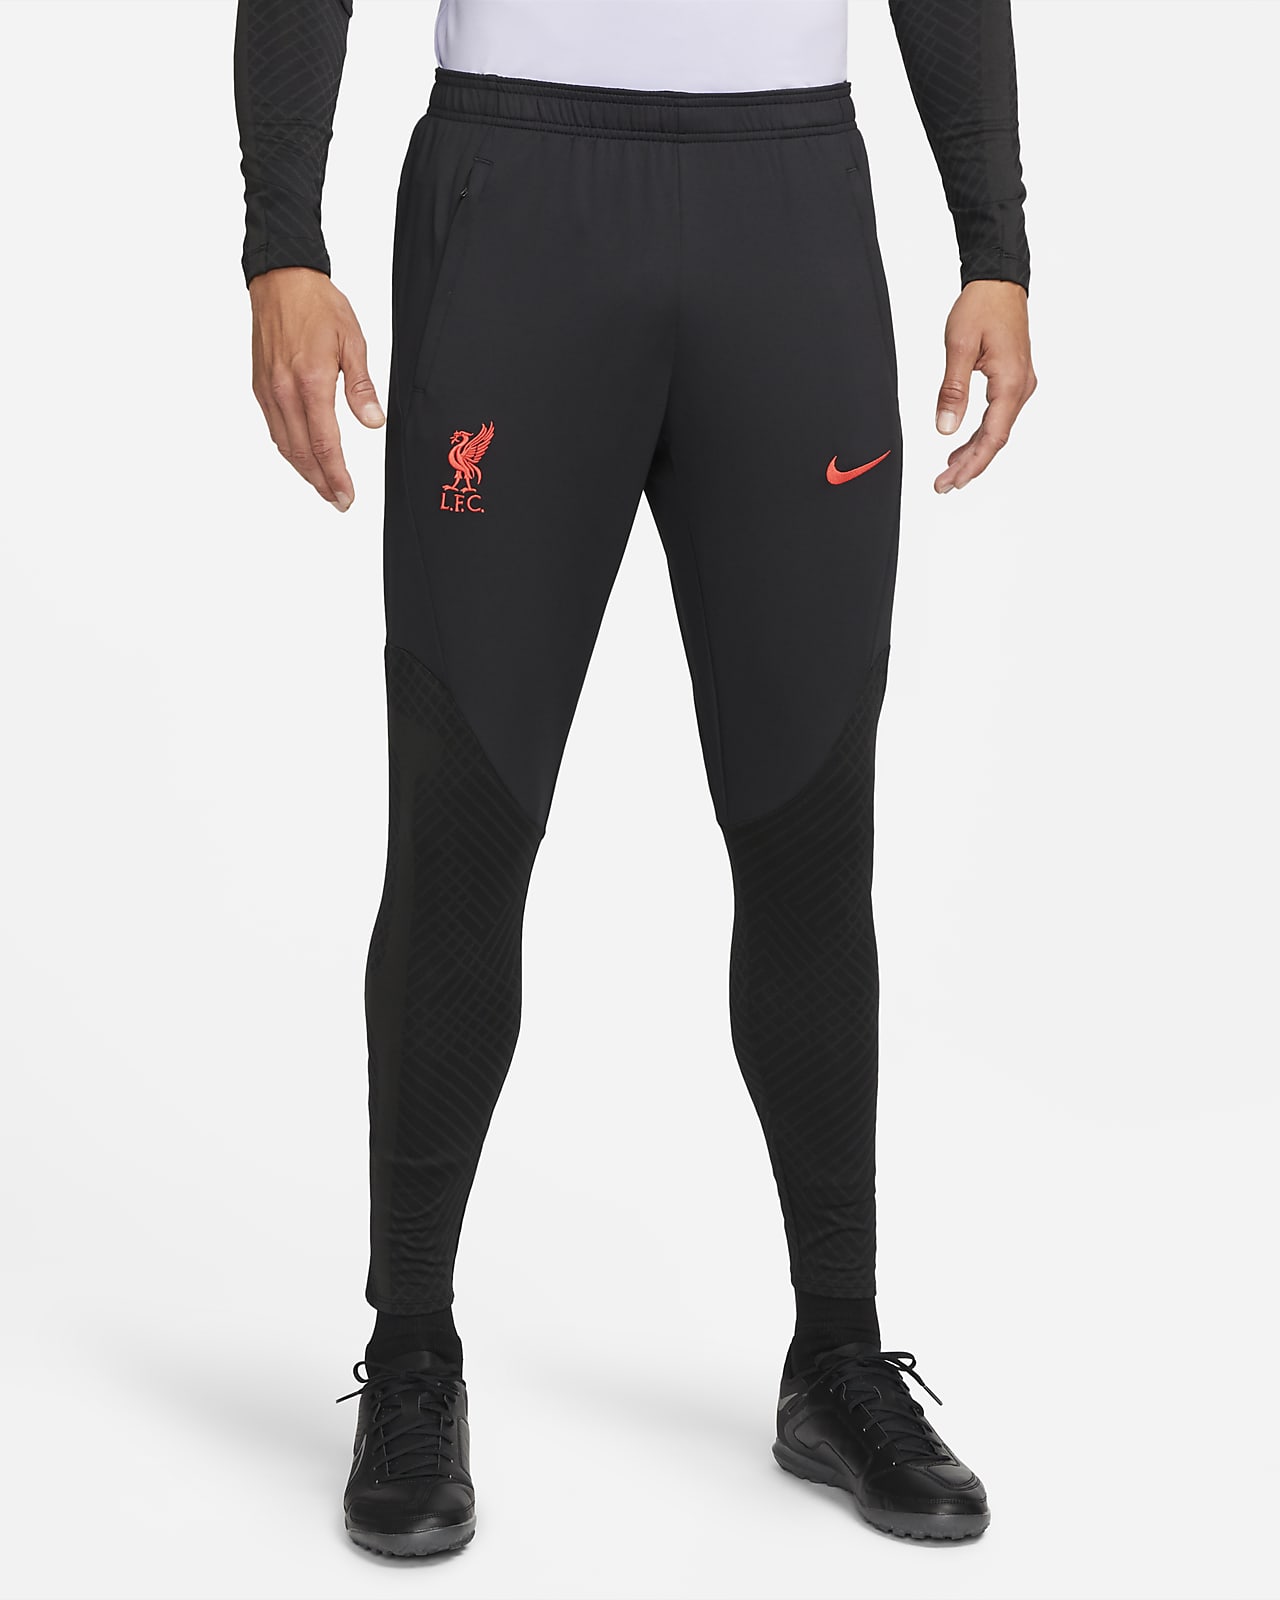 Liverpool F.C Strike Men's Nike Dri-FIT Knit Football Pants